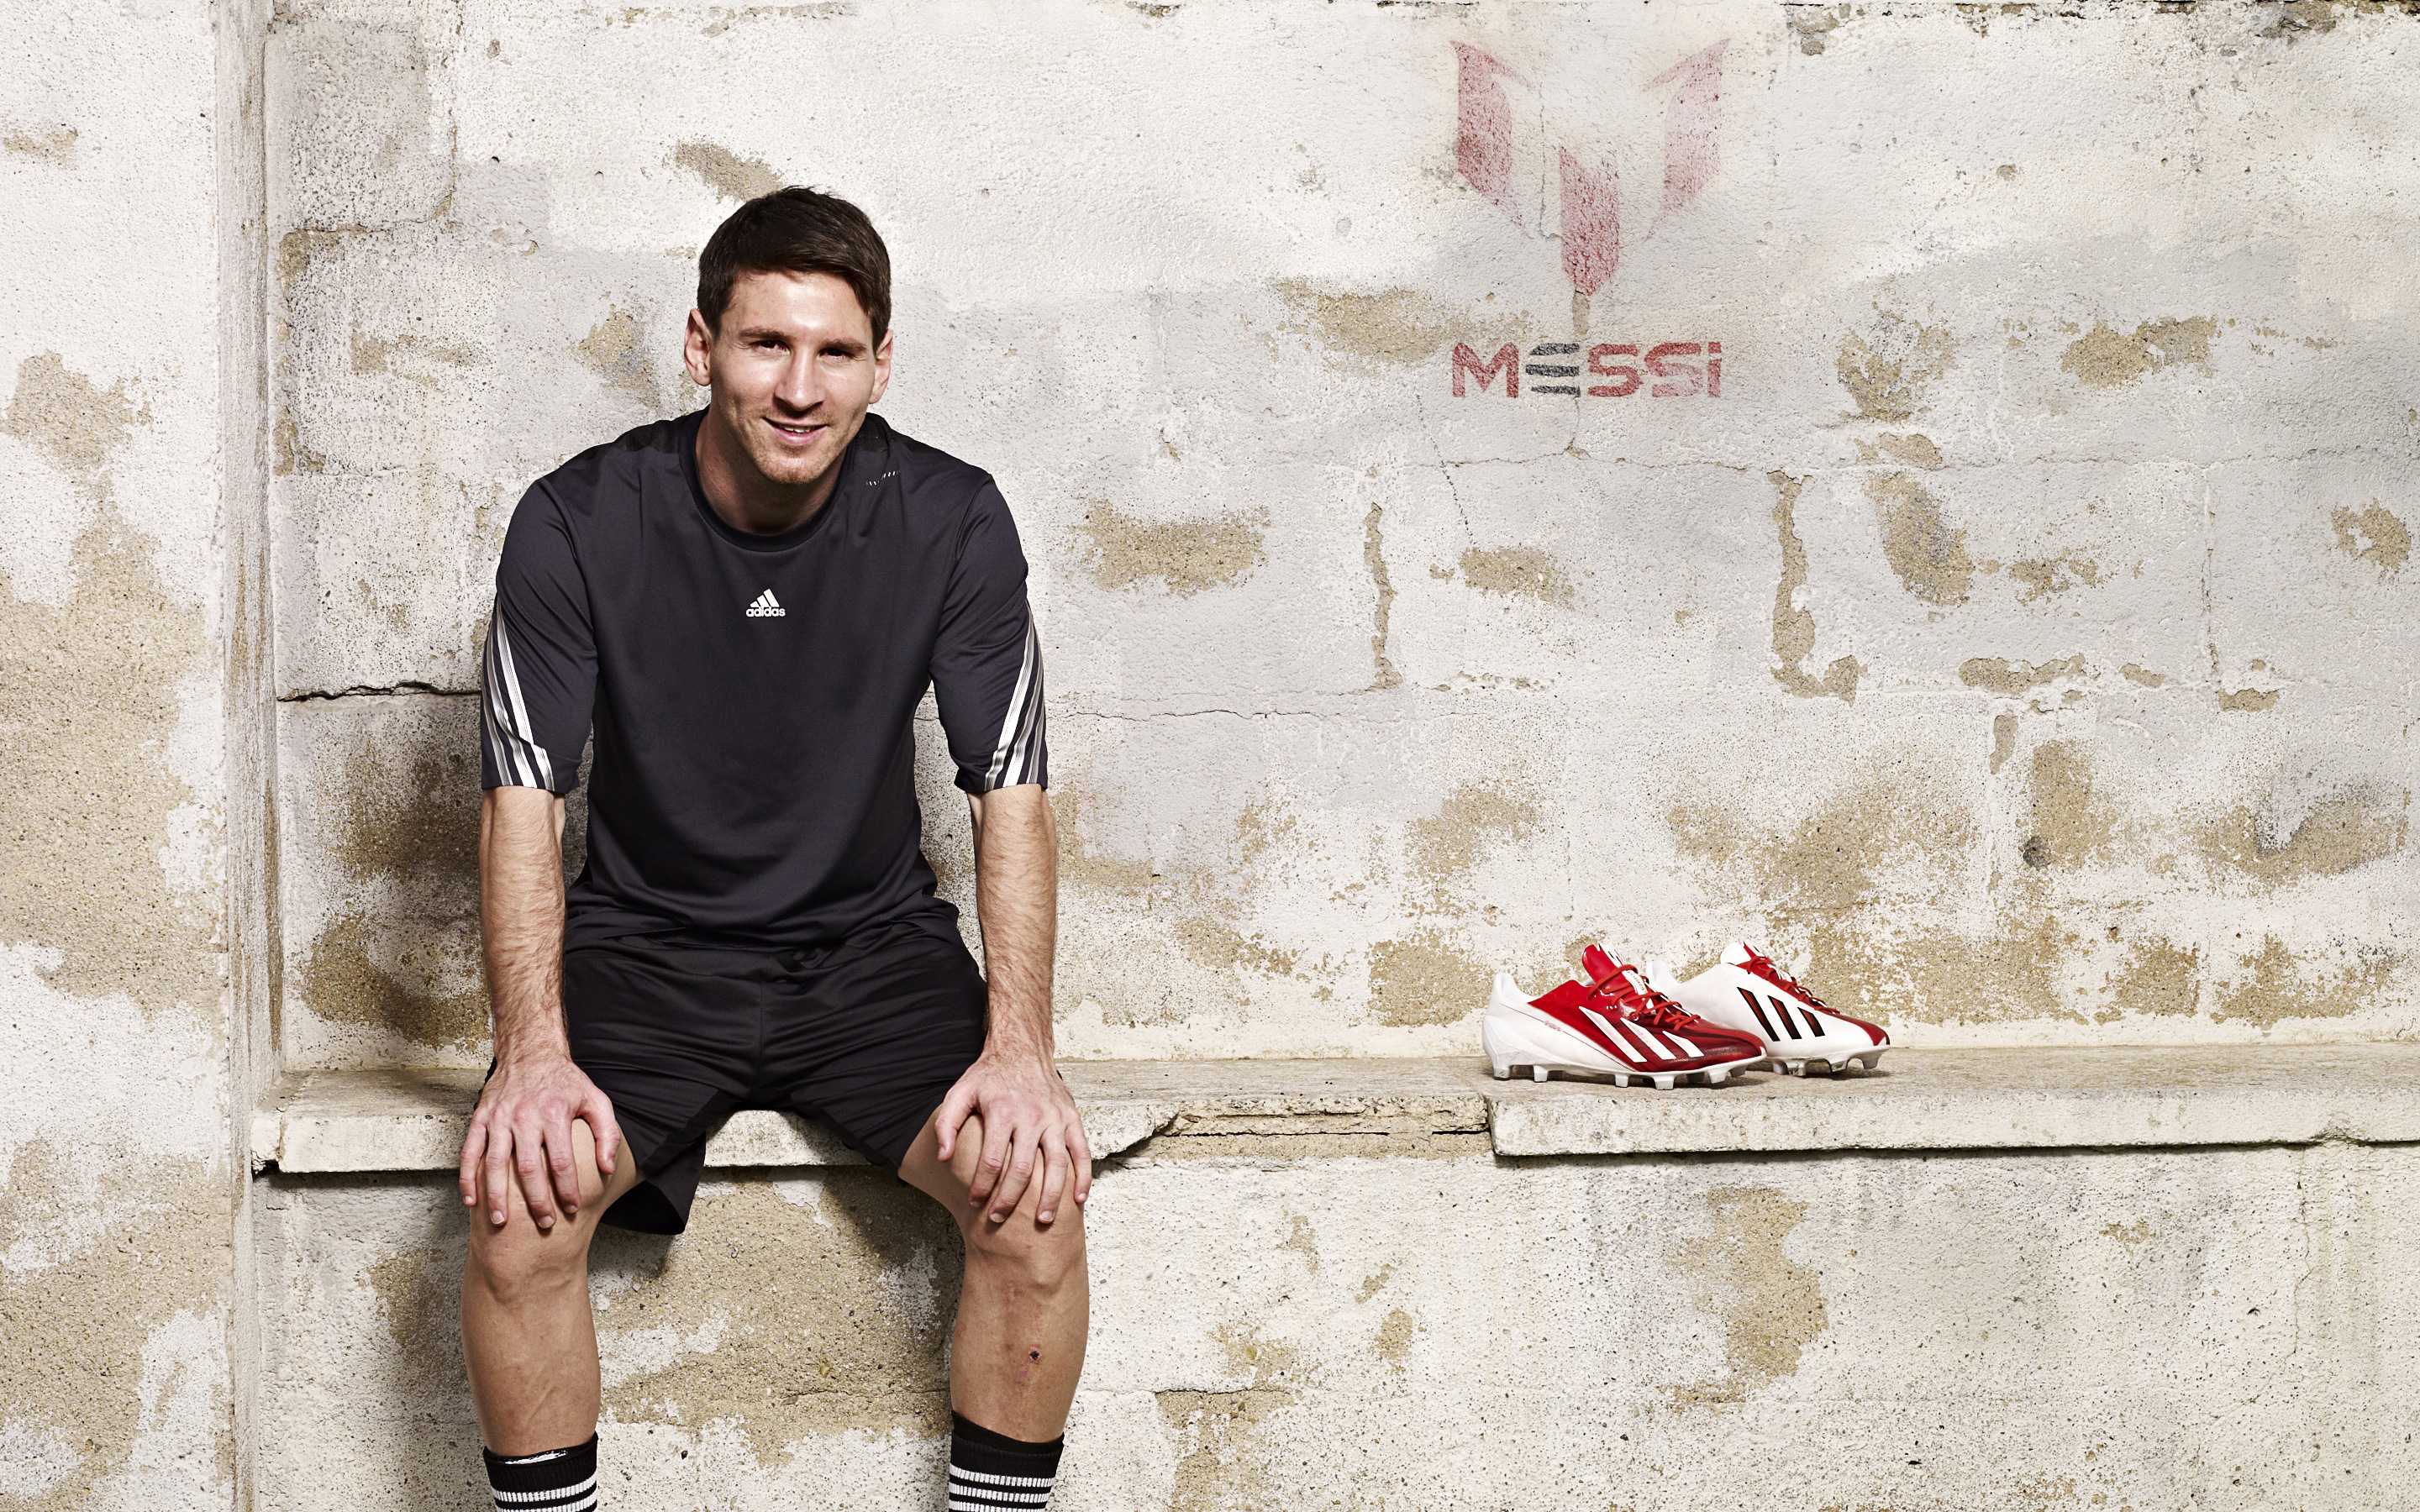 Lionel Messi Argentine footballer